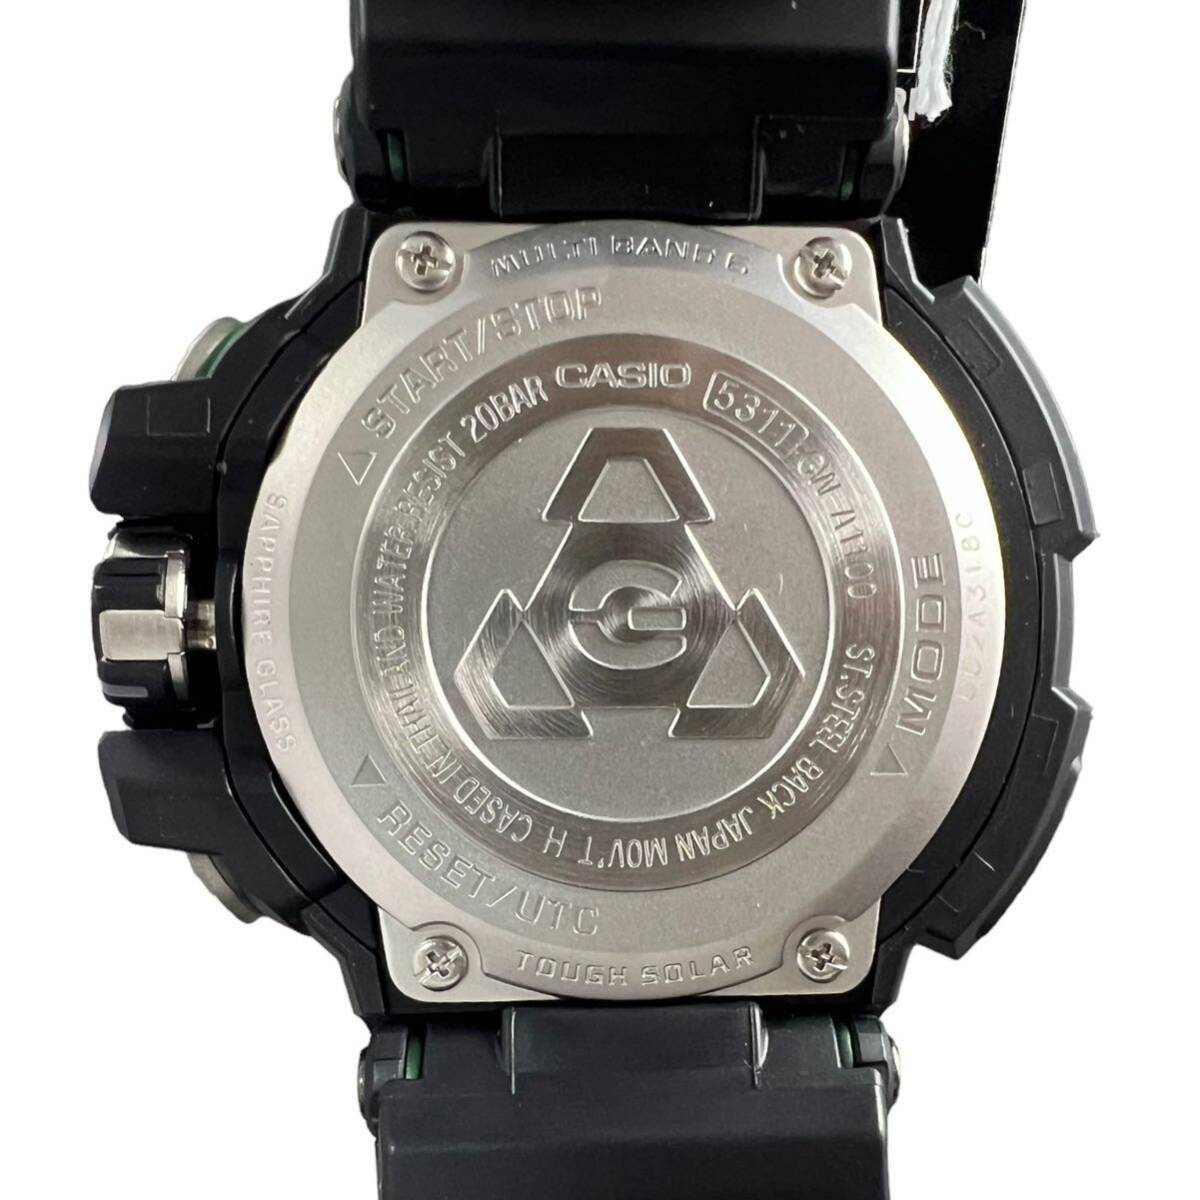 【KF1046】CASIO G-SHOCK 5311 GW-A1100-1A3JF  радиоволны   солнечный   Sky  кран  ...  мужские наручные часы    черный  ... аммортизаторы  